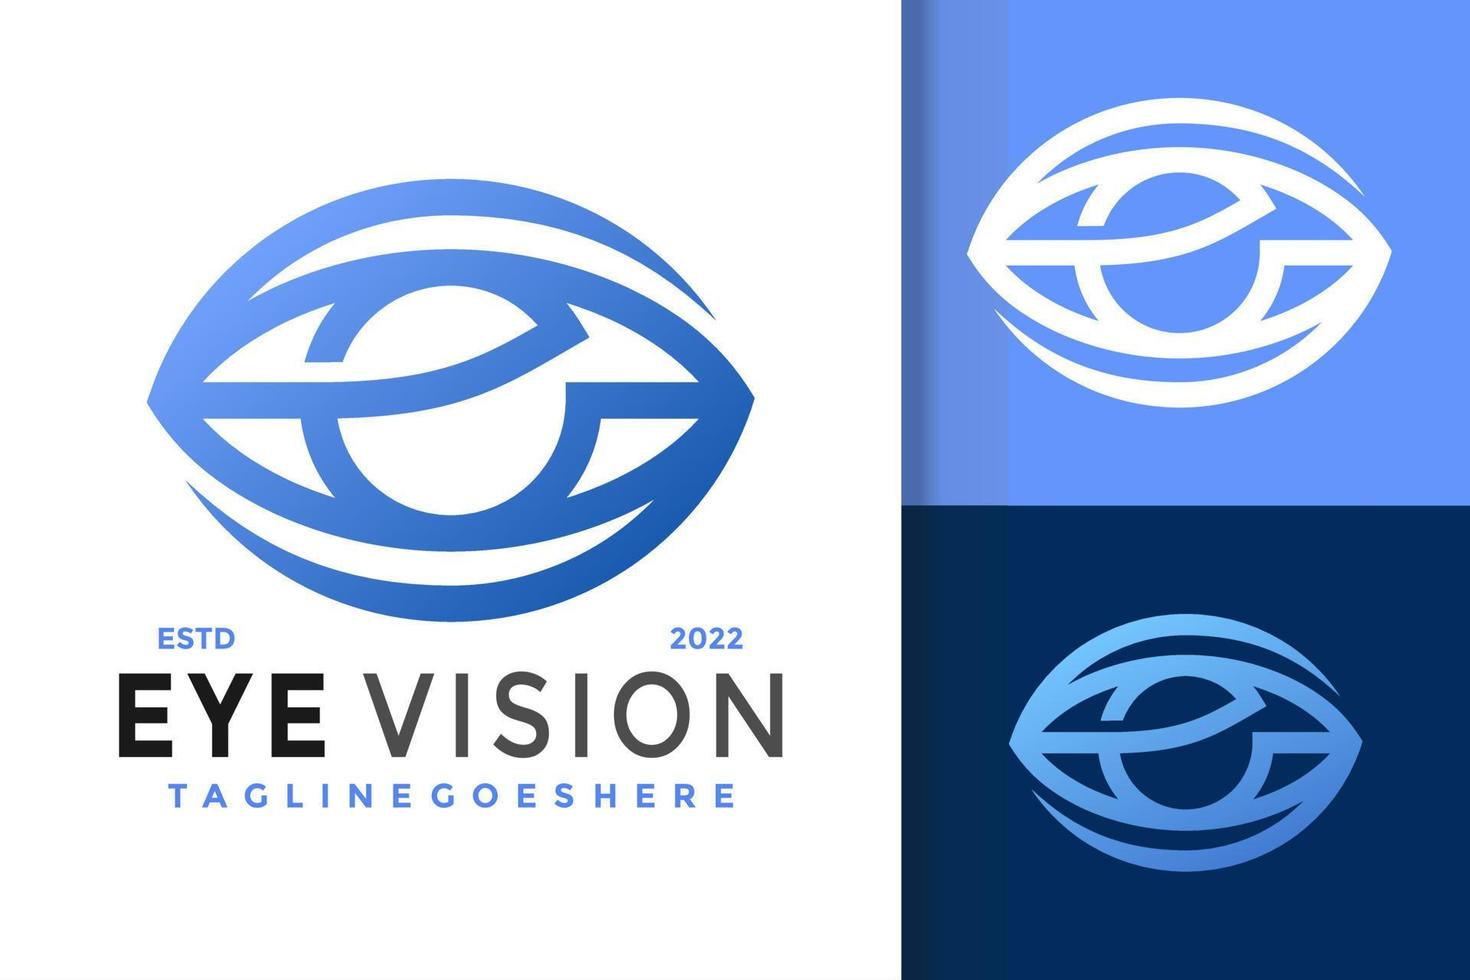 création de logo e eye vision, vecteur de logos d'identité de marque, logo moderne, modèle d'illustration vectorielle de conceptions de logo